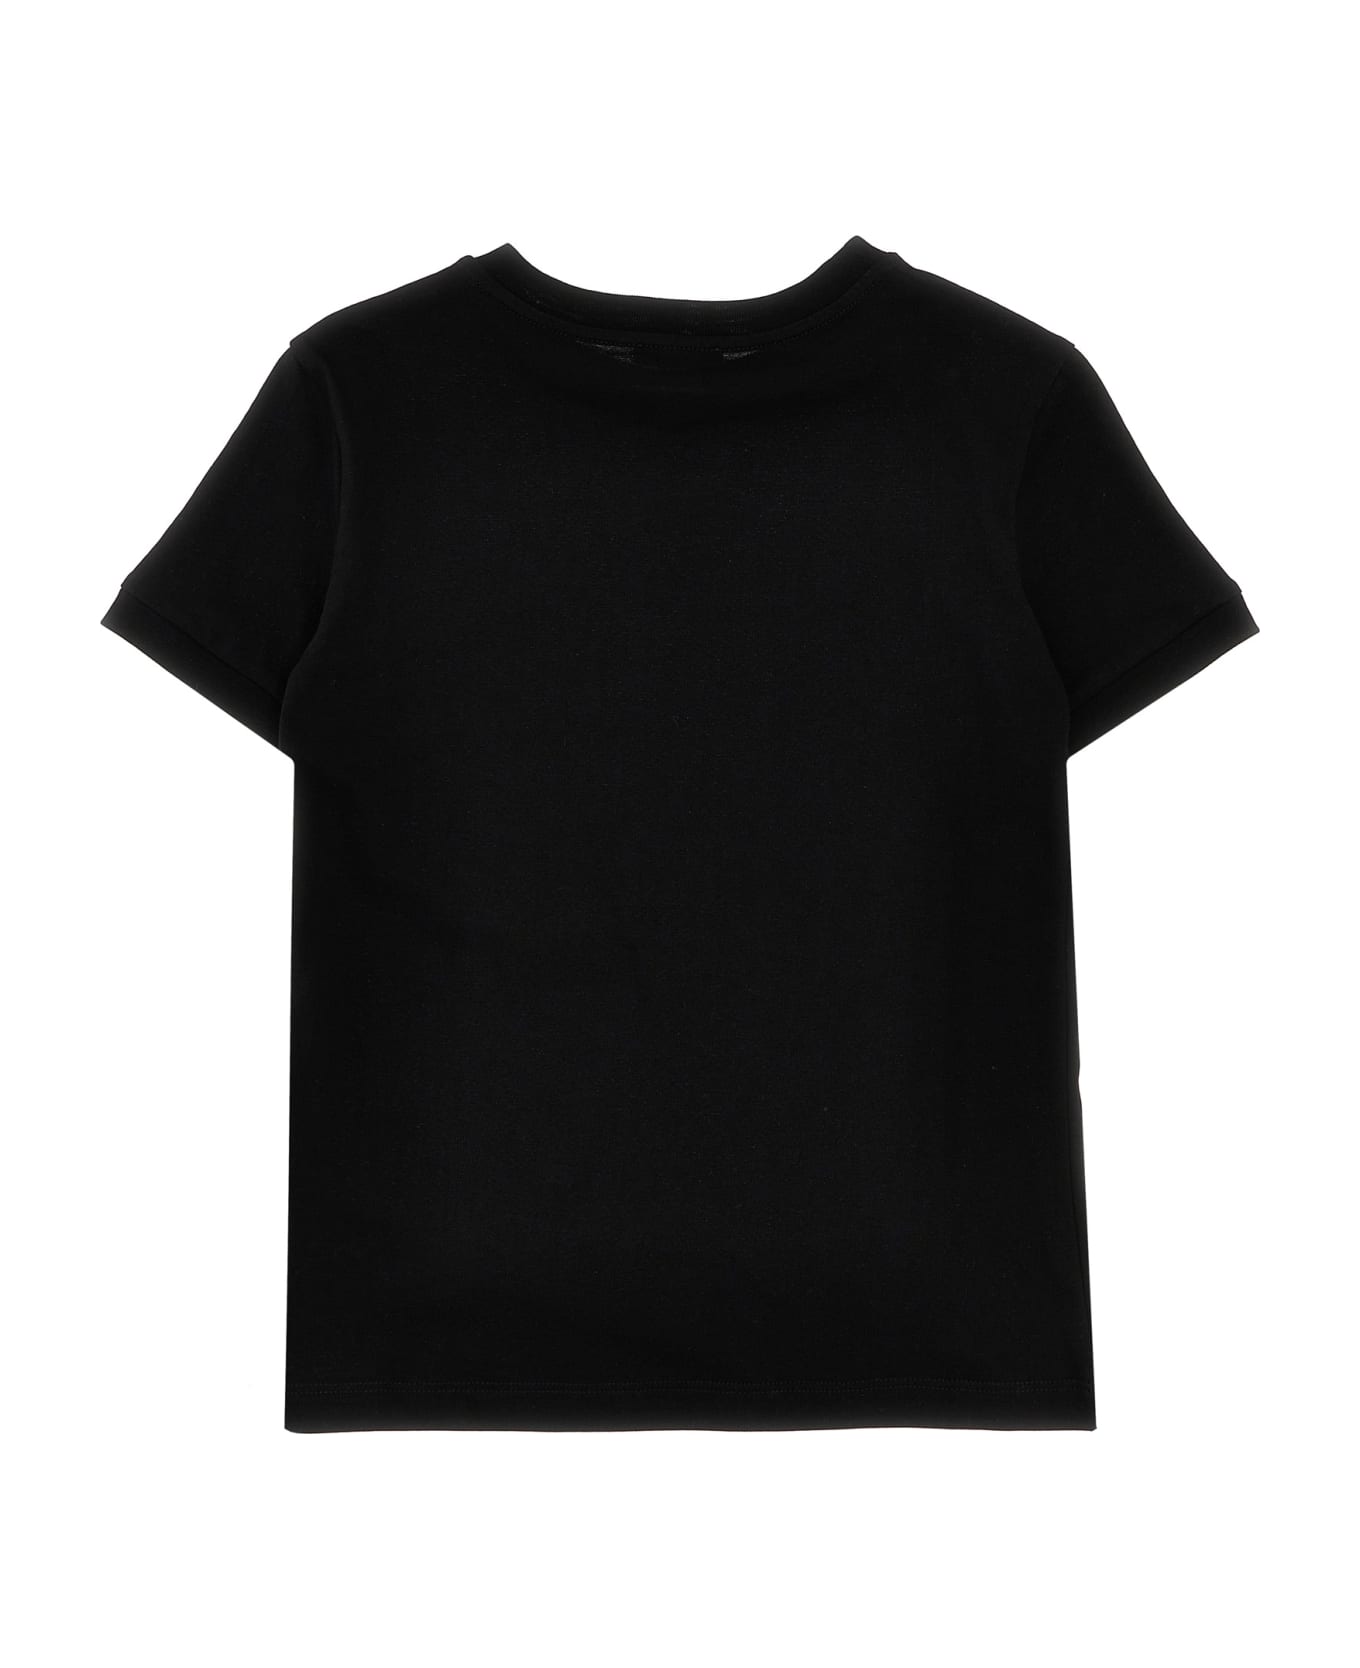 Dolce & Gabbana Logo T-shirt - Black  